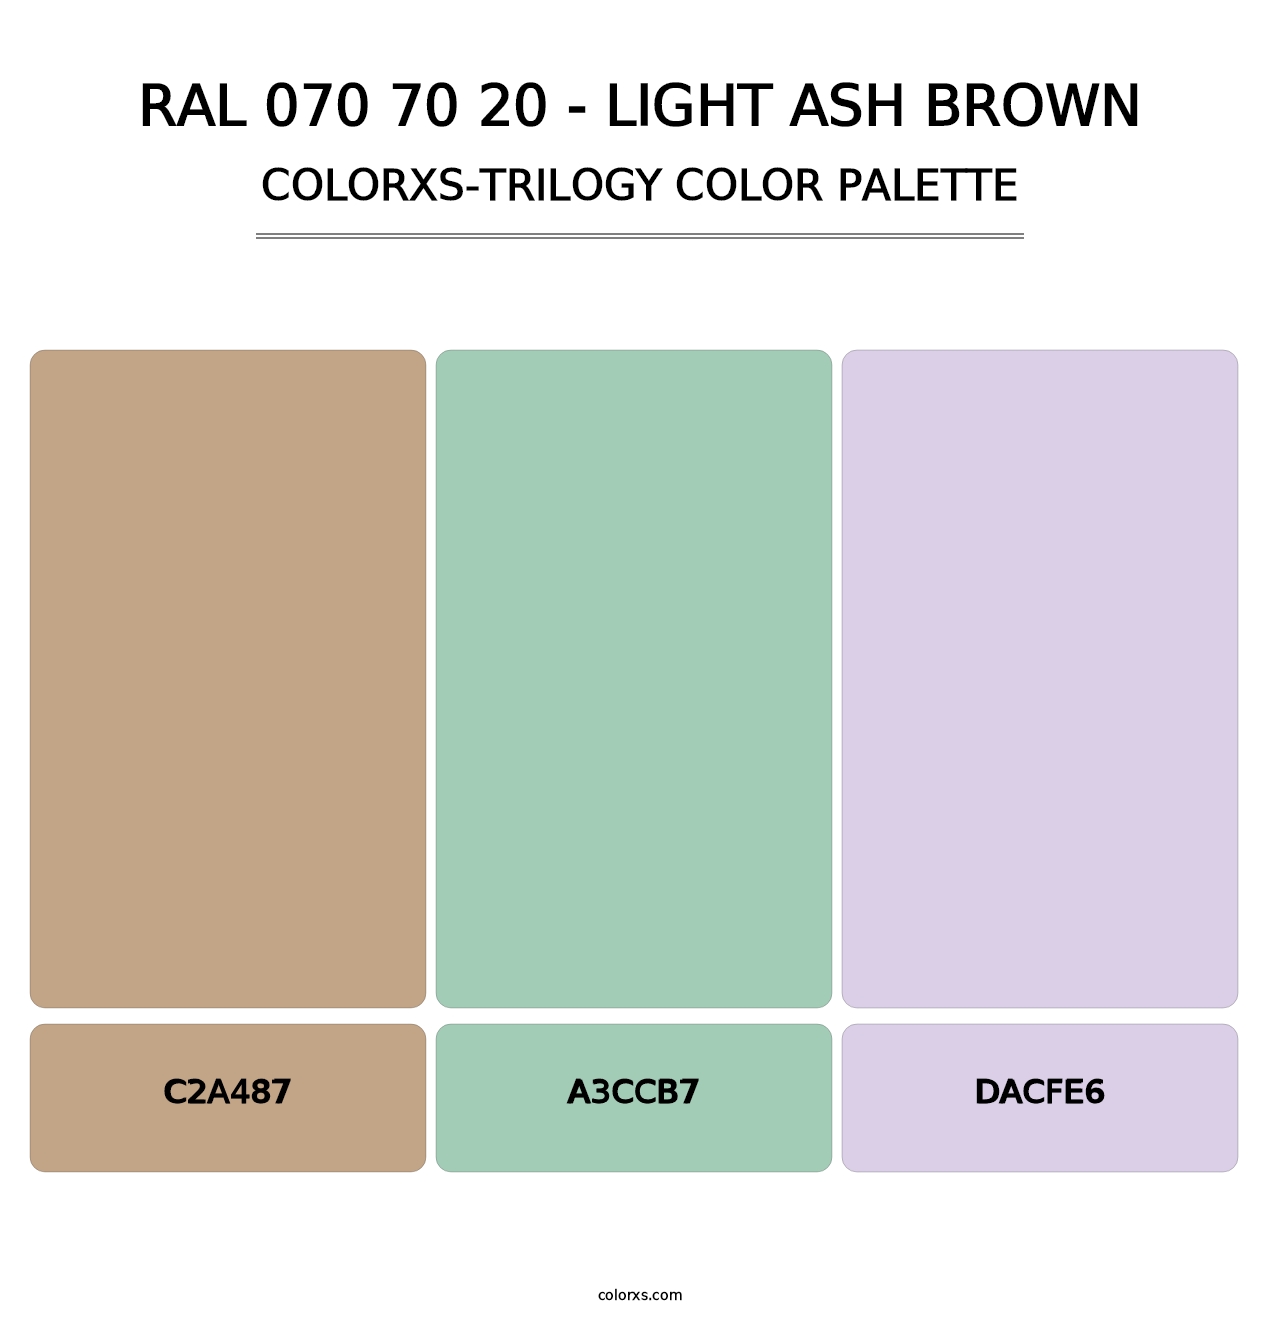 RAL 070 70 20 - Light Ash Brown - Colorxs Trilogy Palette